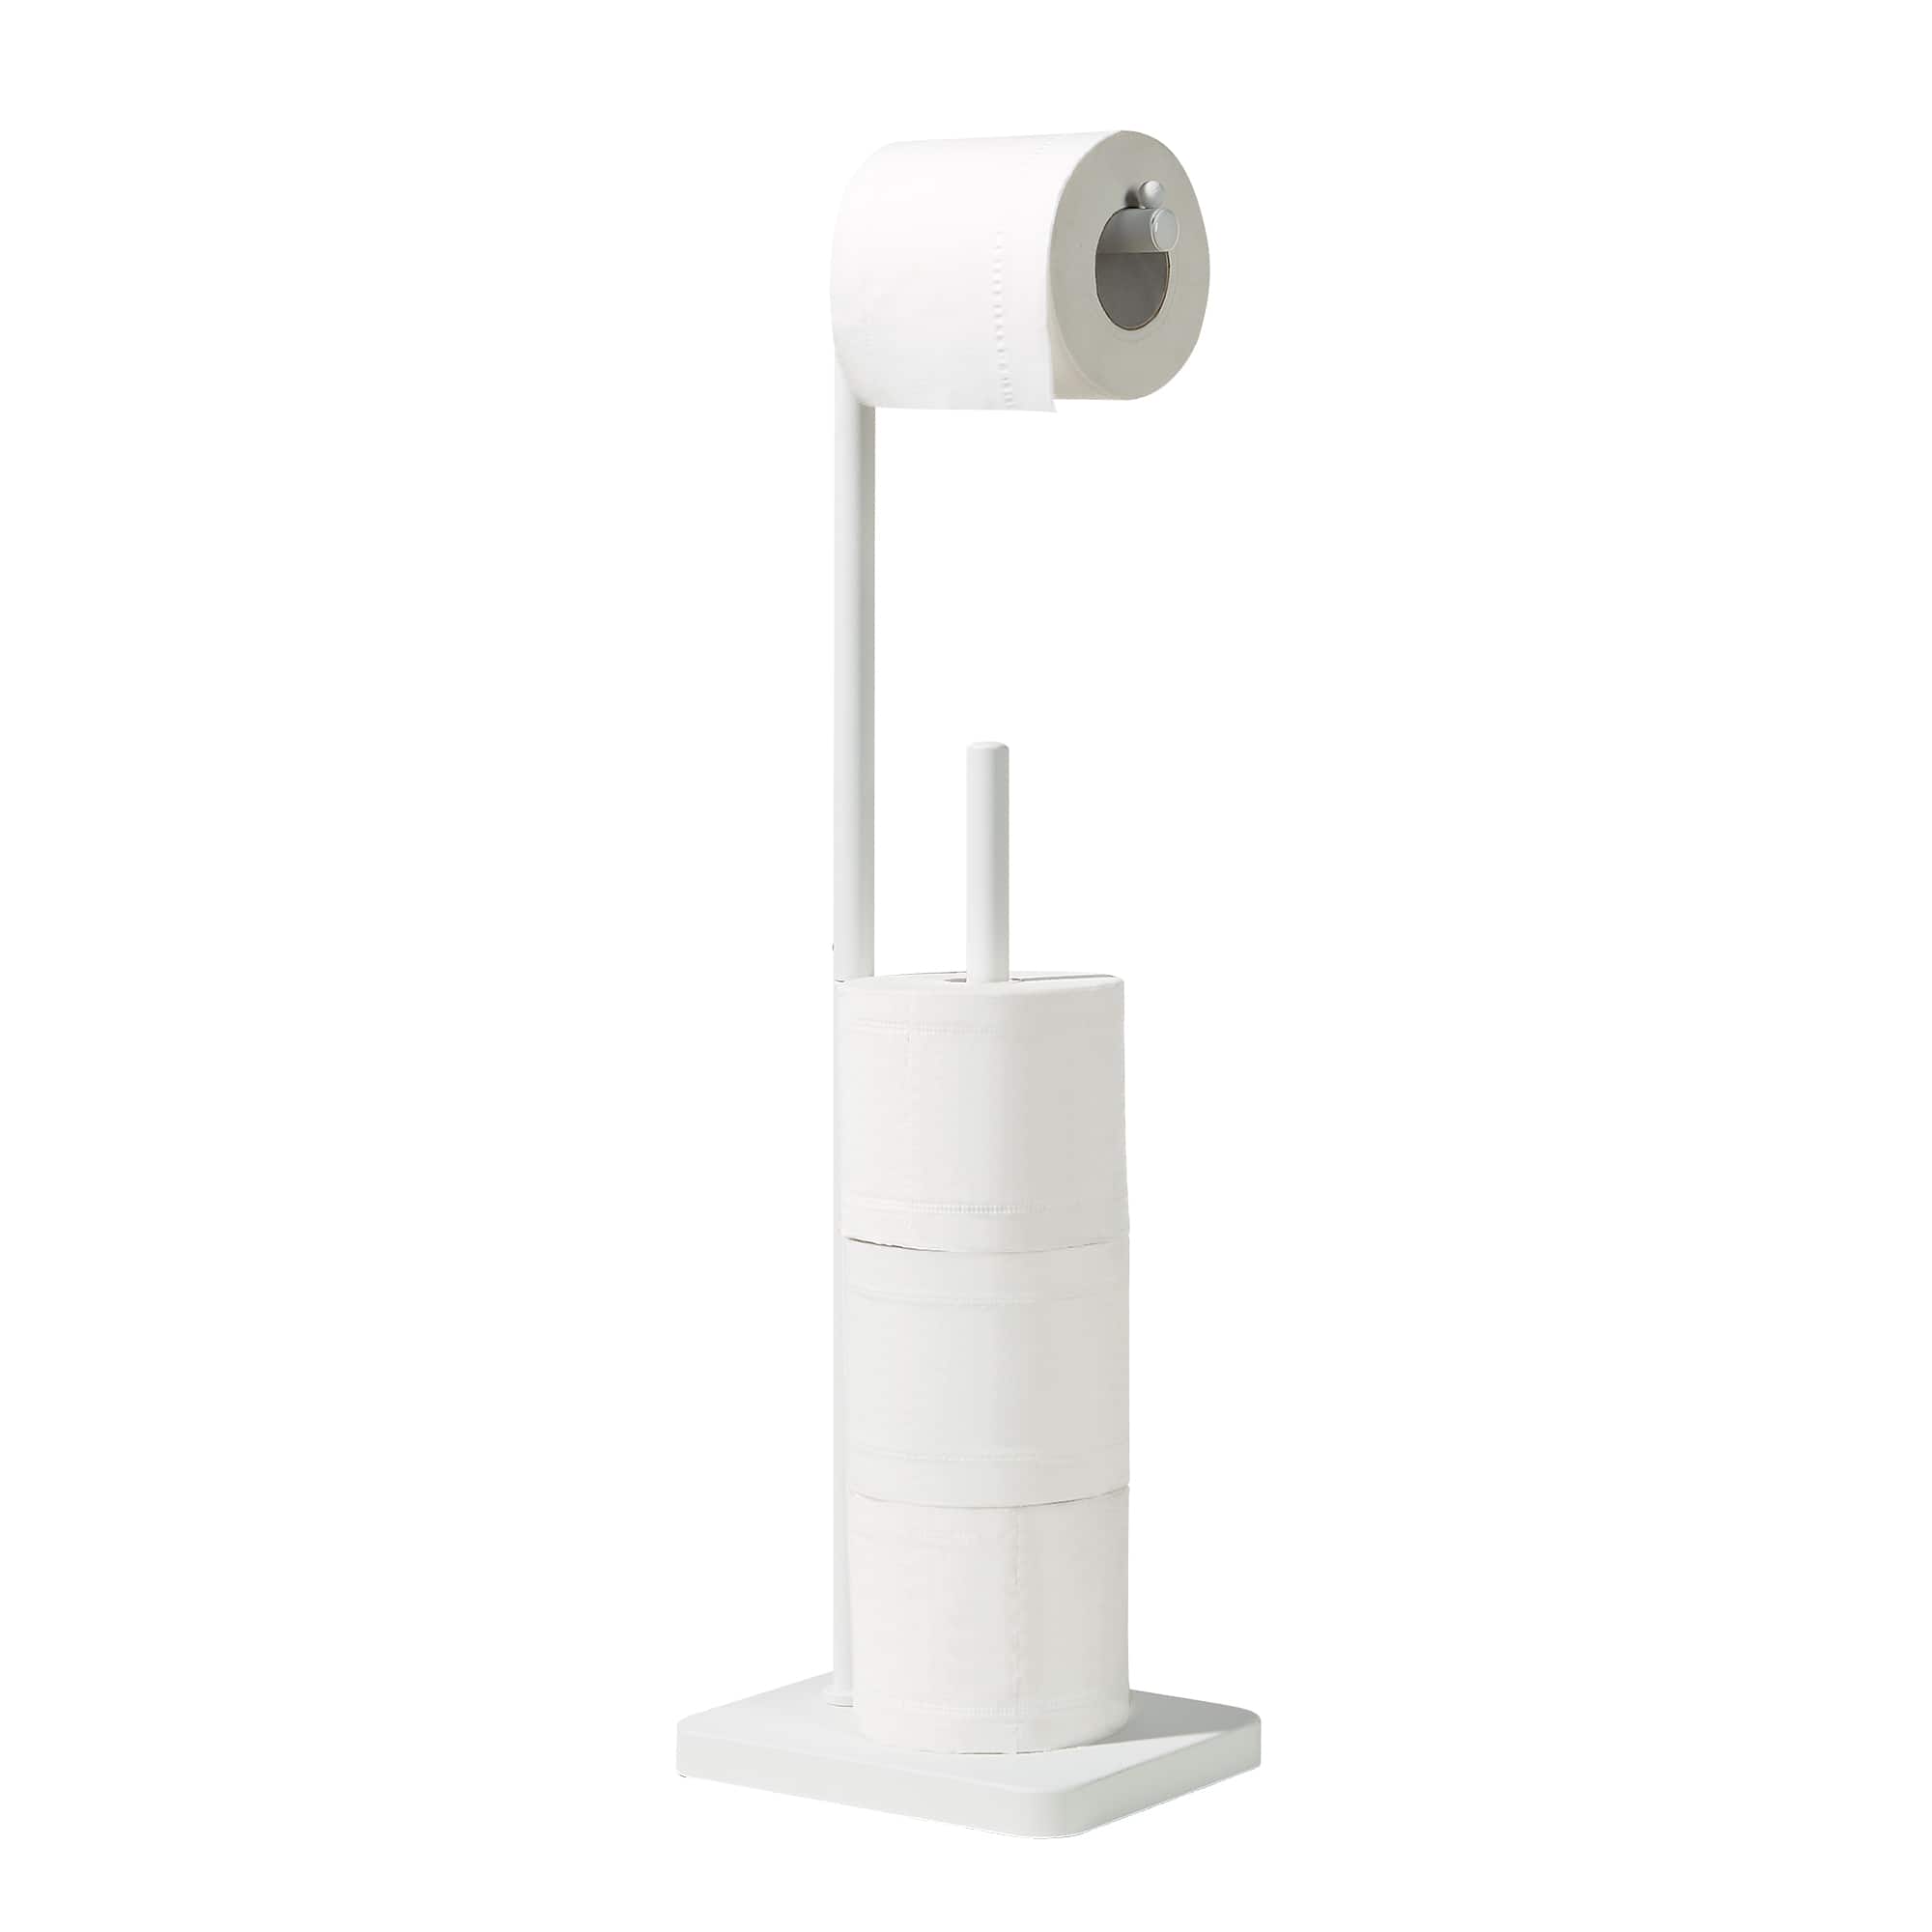 SunnyPoint Freestanding Toilet Paper Holder